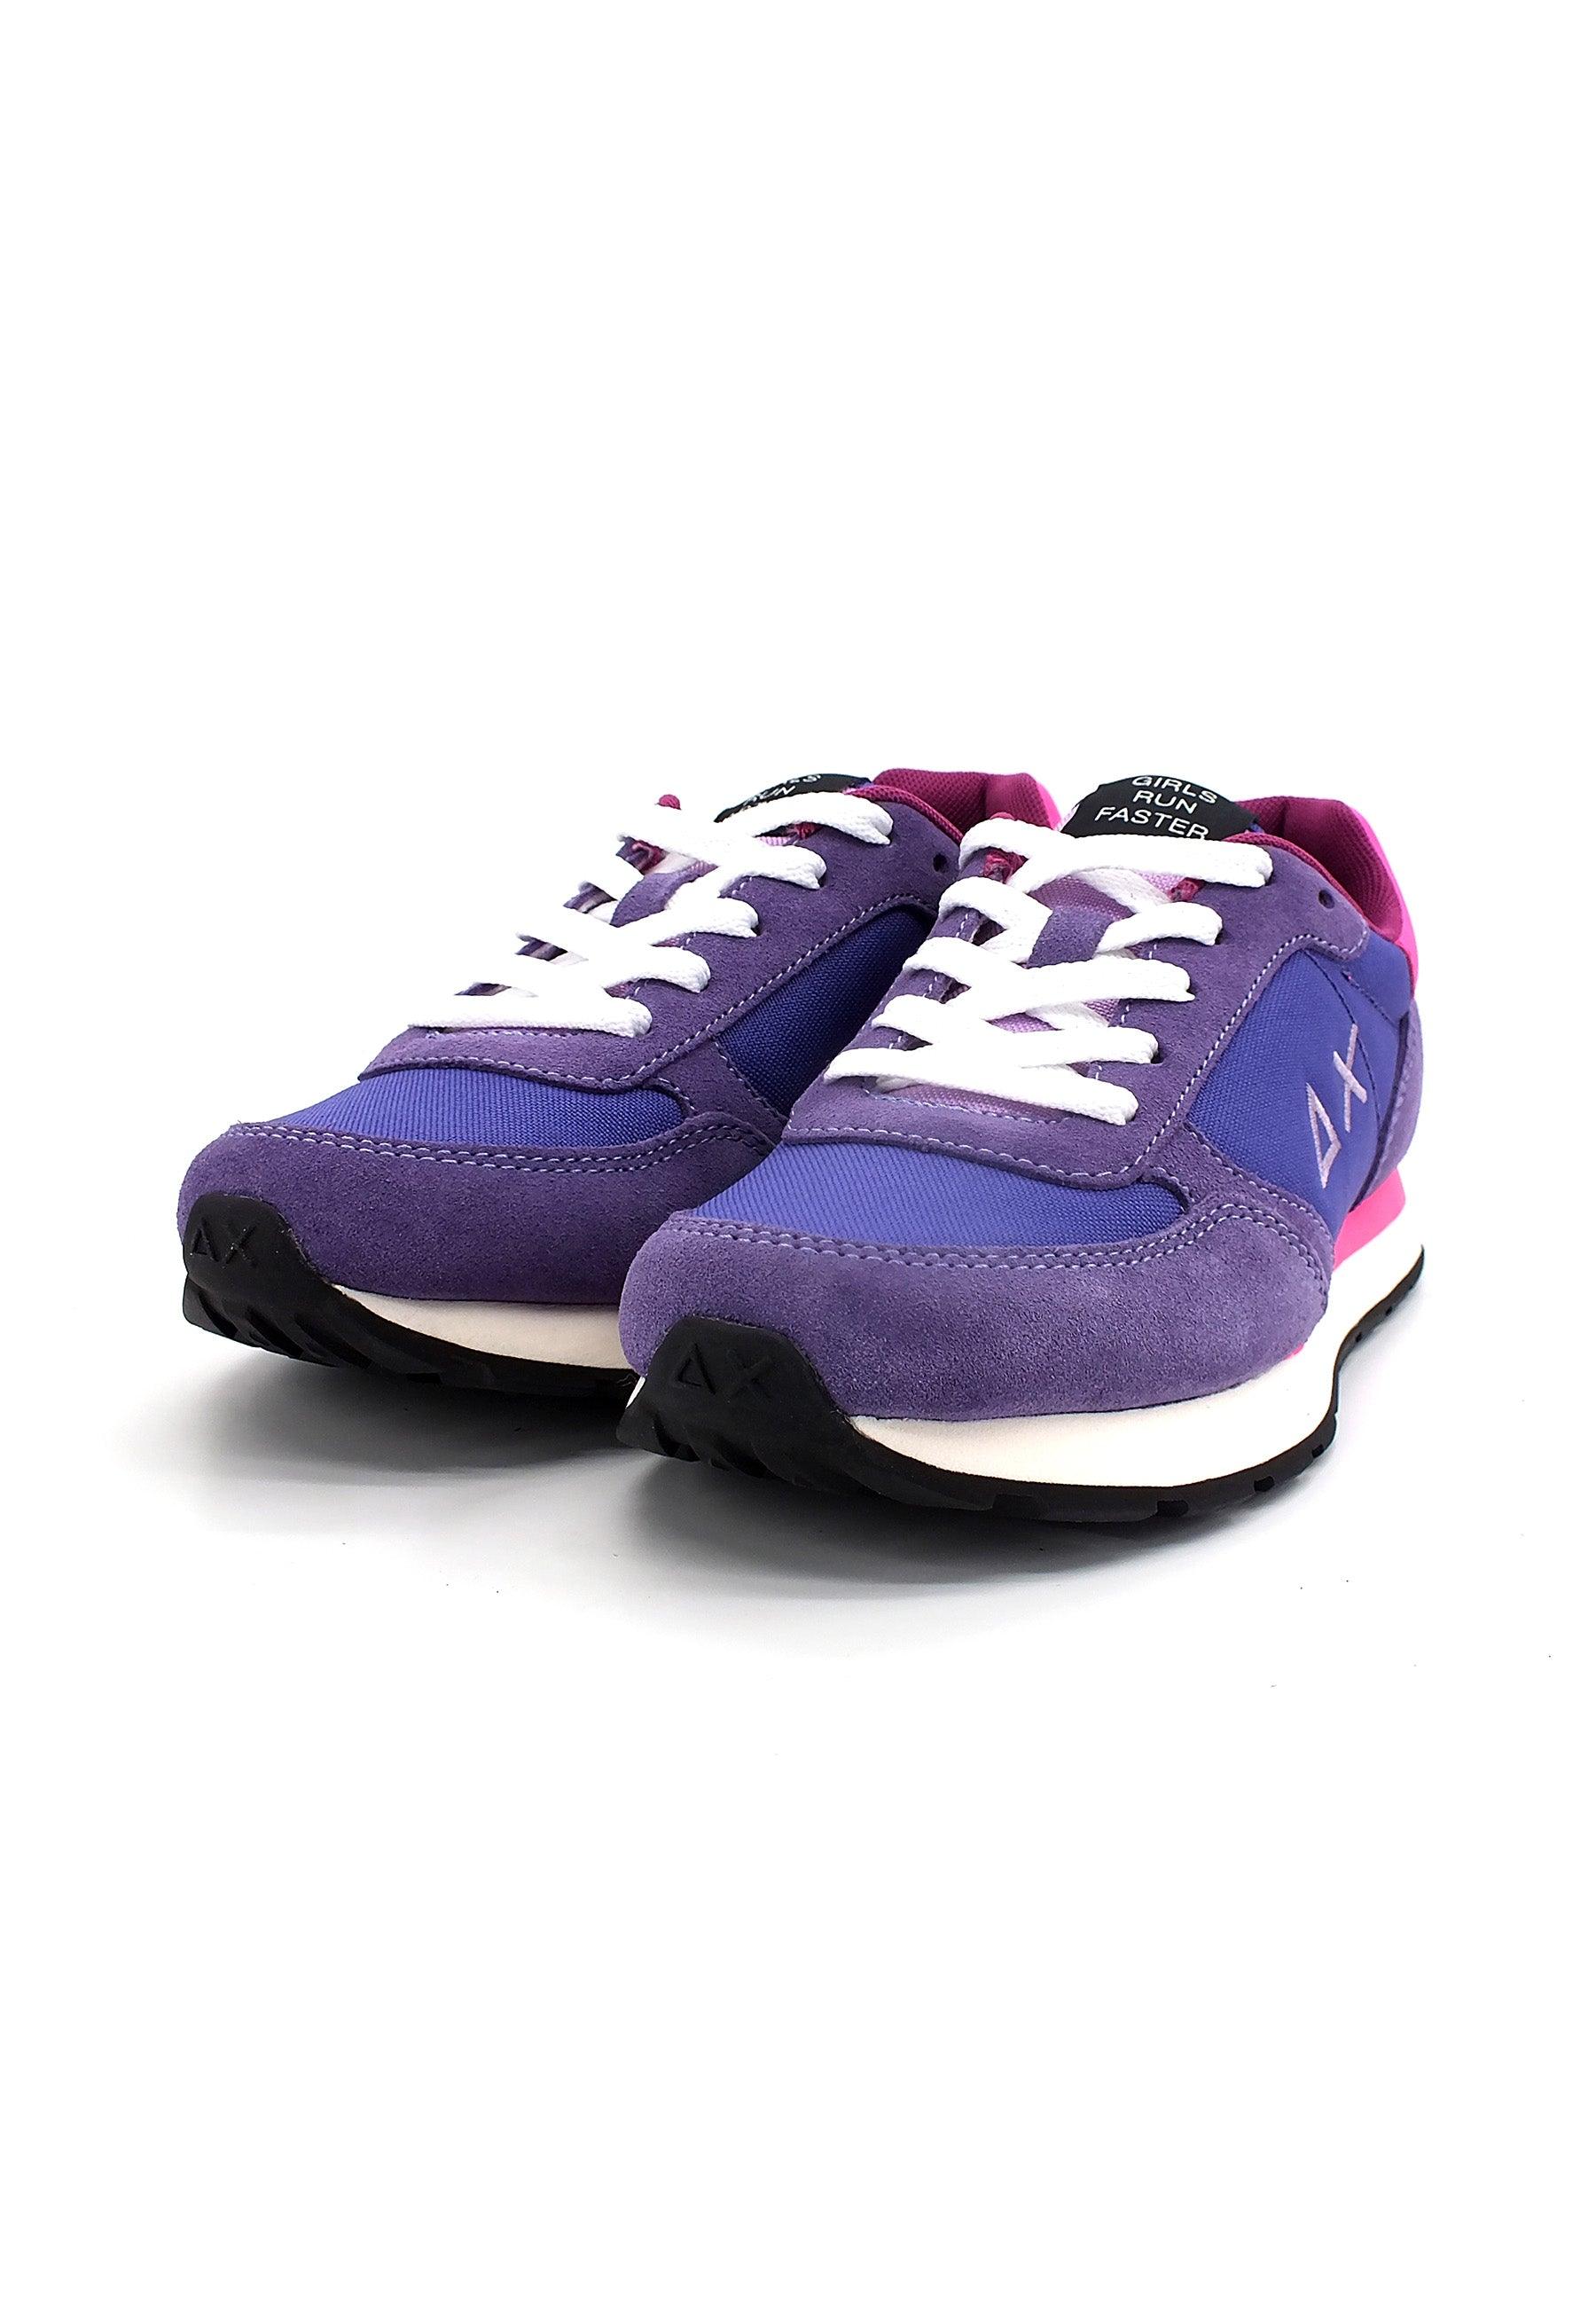 SUN68 Girl's Ally Solid Sneaker Bimbo Violet Z42401T - Sandrini Calzature e Abbigliamento